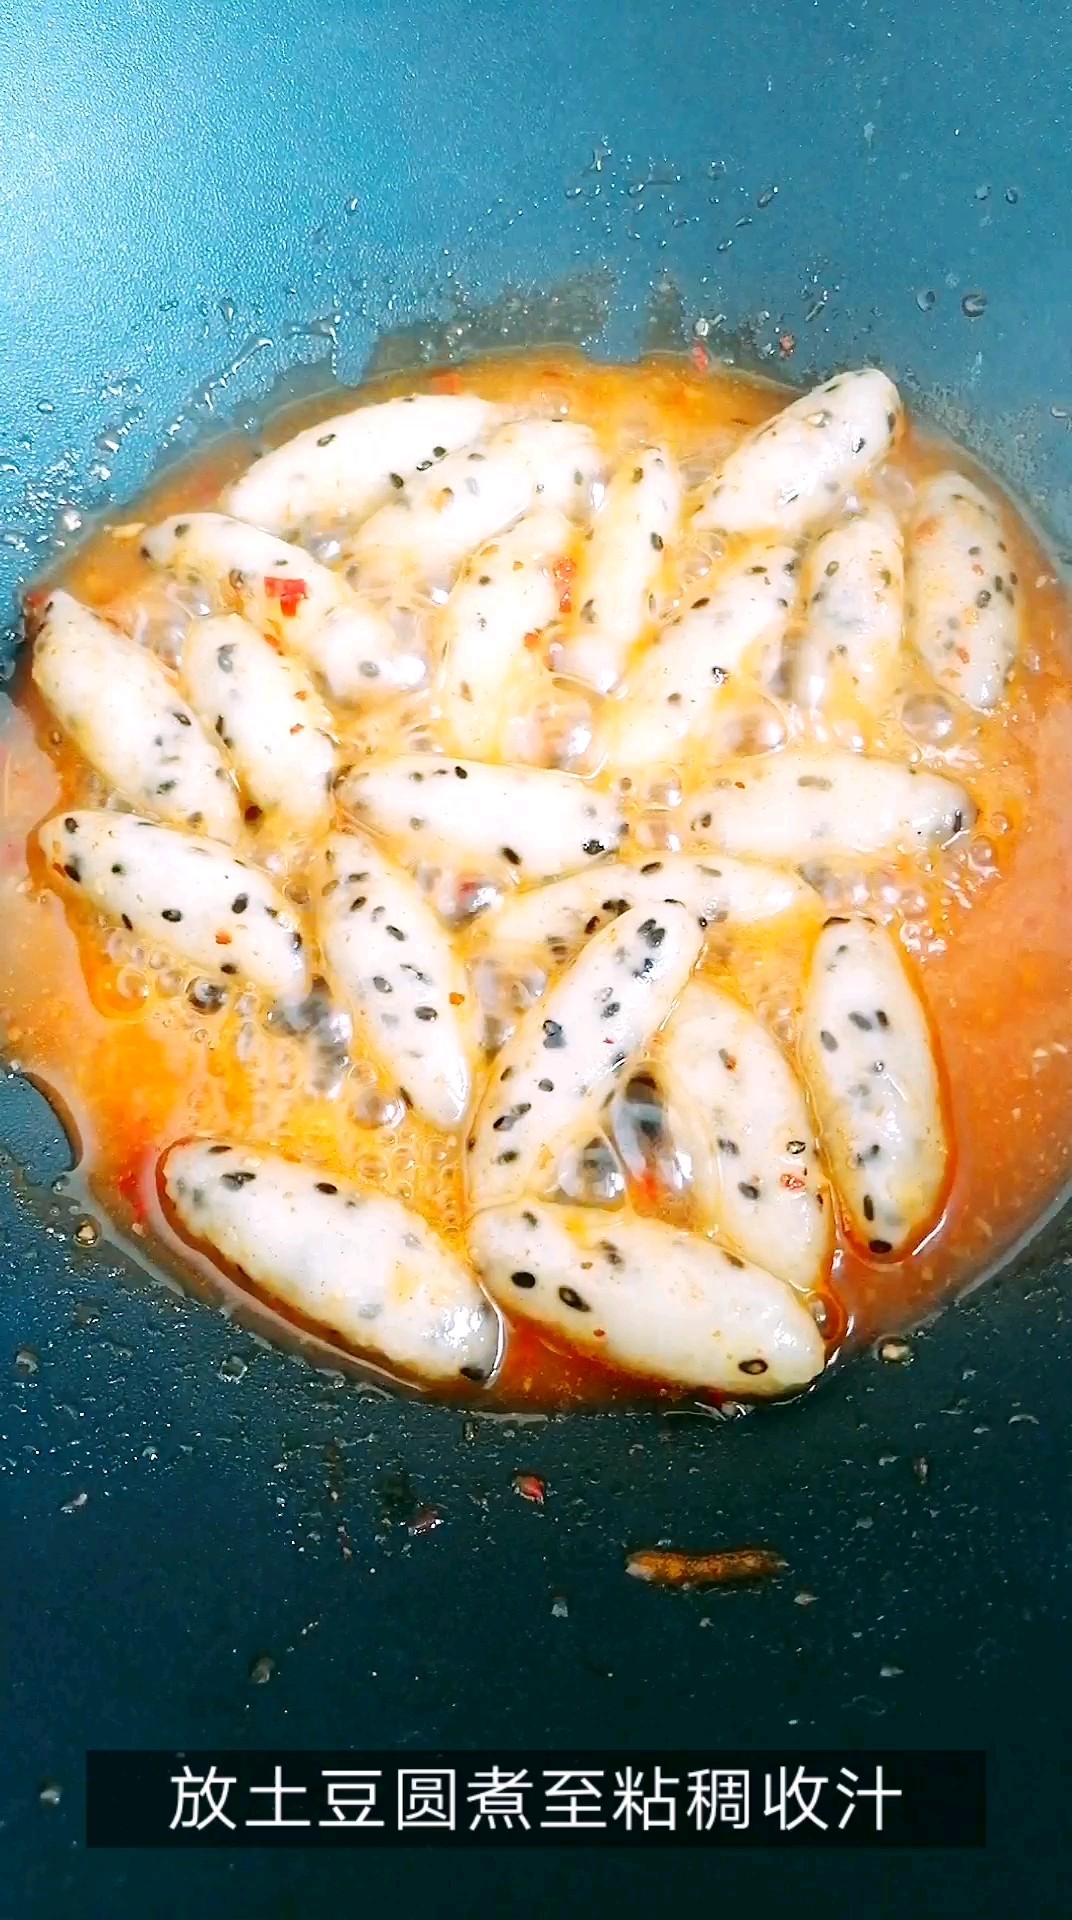 Spicy Potato Balls recipe